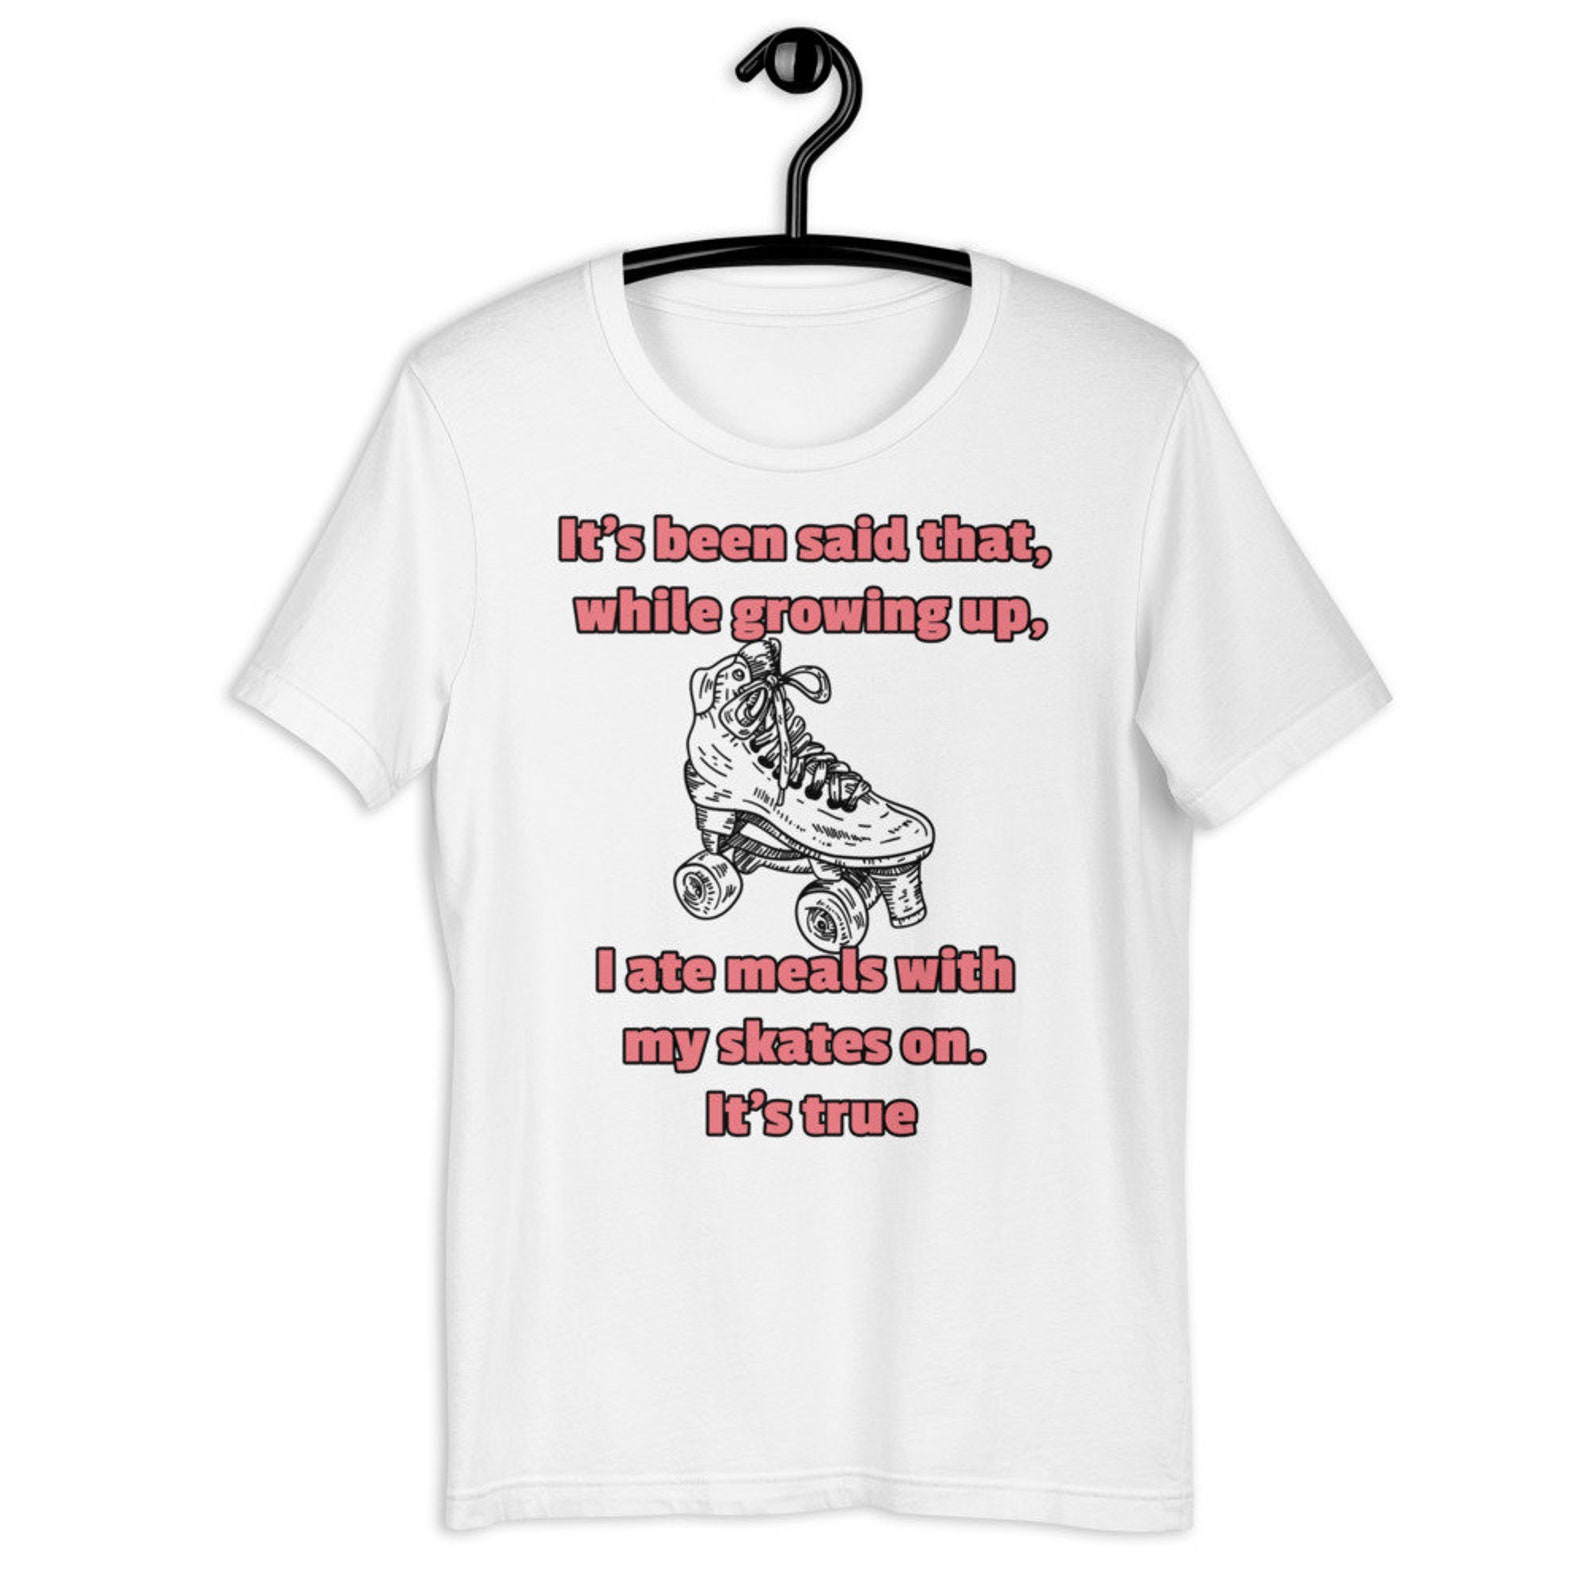 Roller skate shirt Roller Skating t-shirt Skate shirt | Etsy